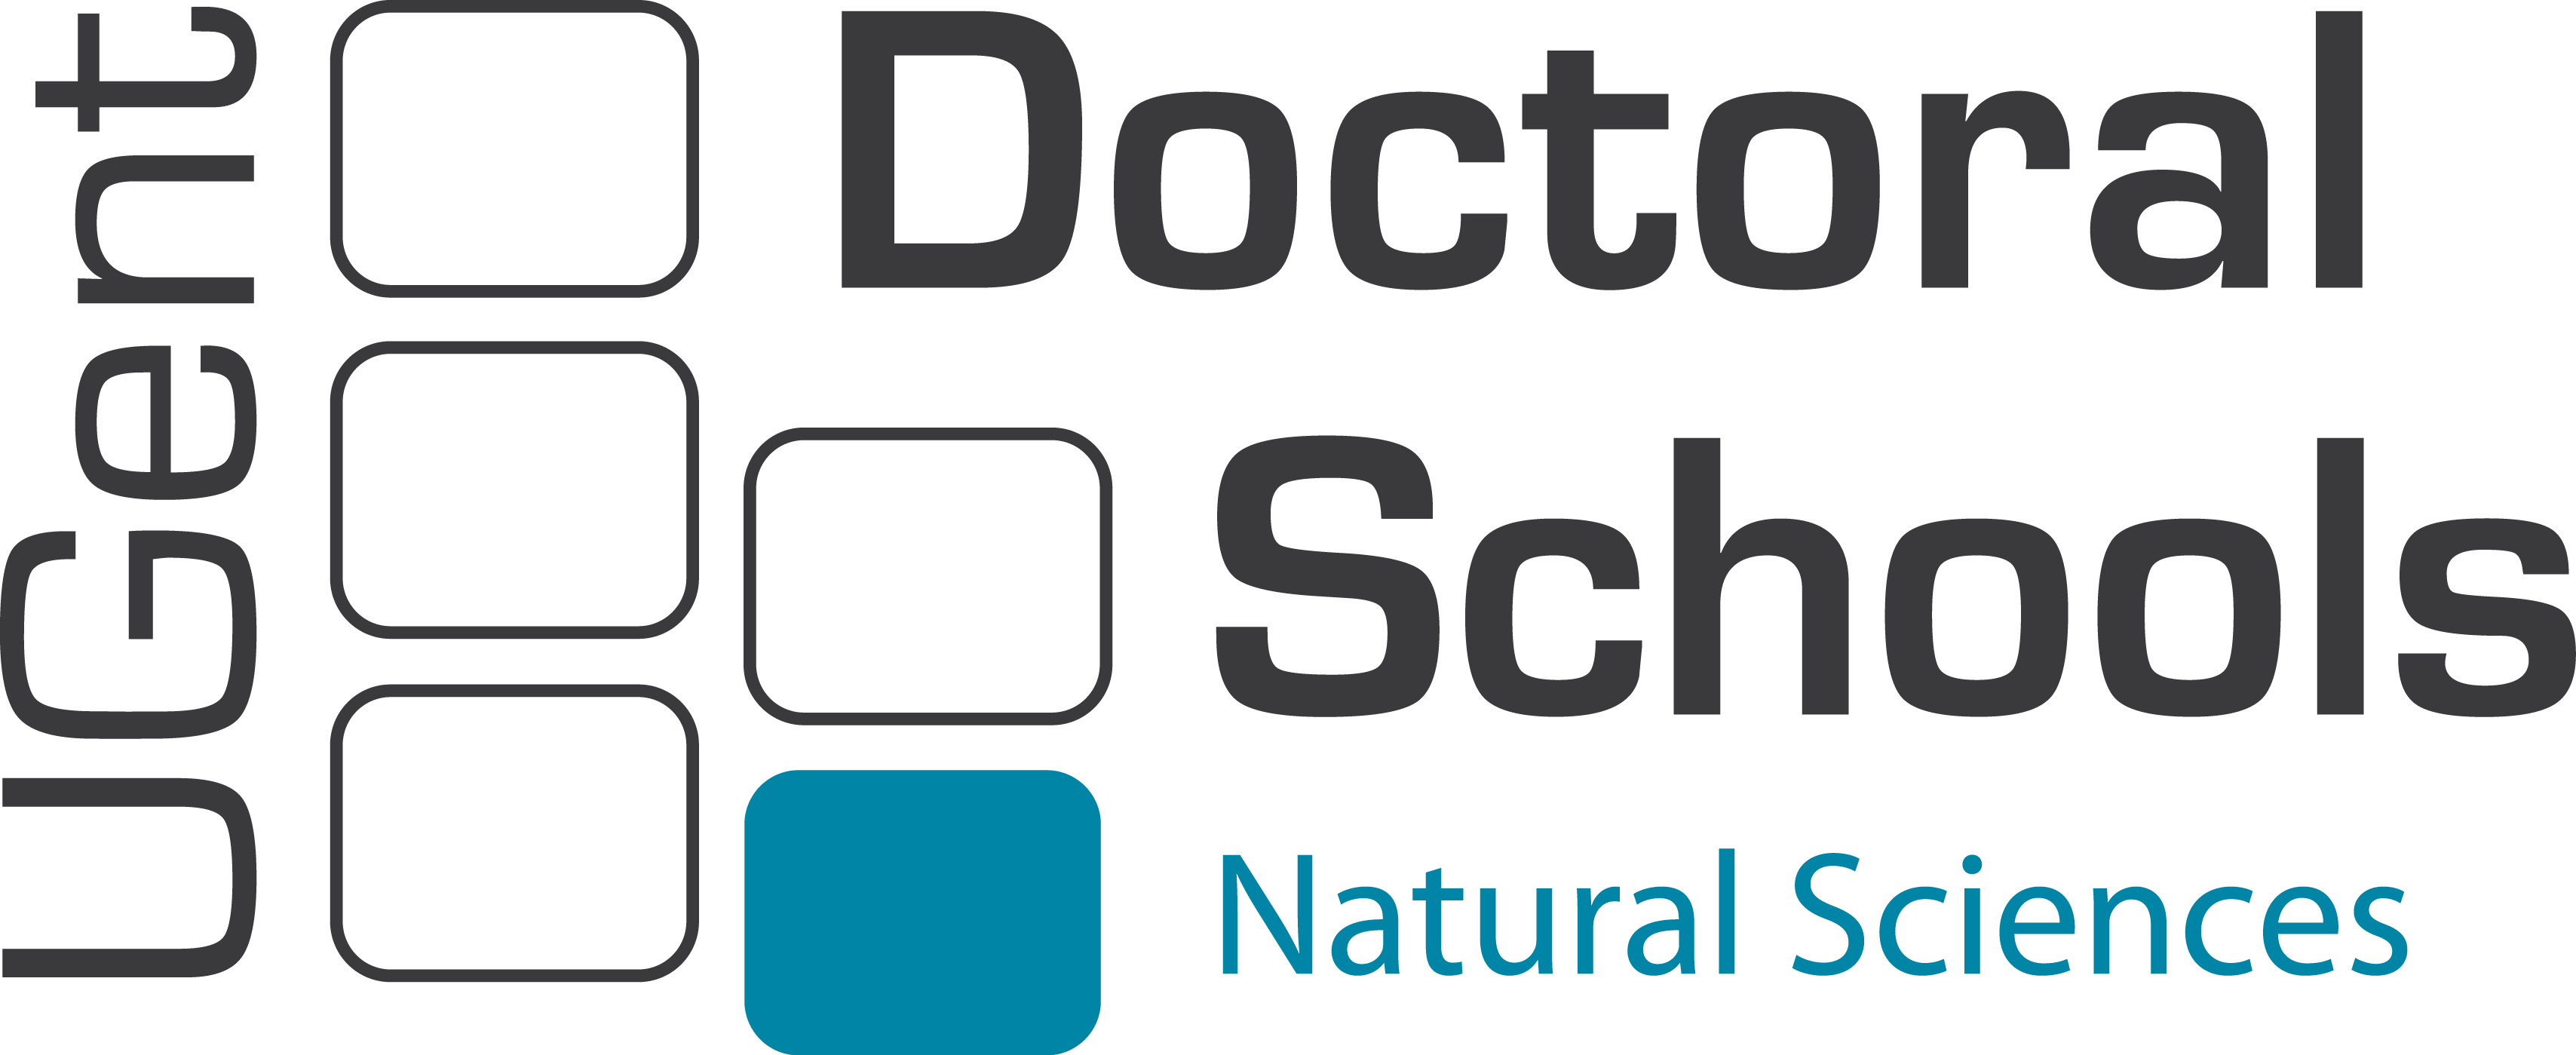 Doctoral Schools NS